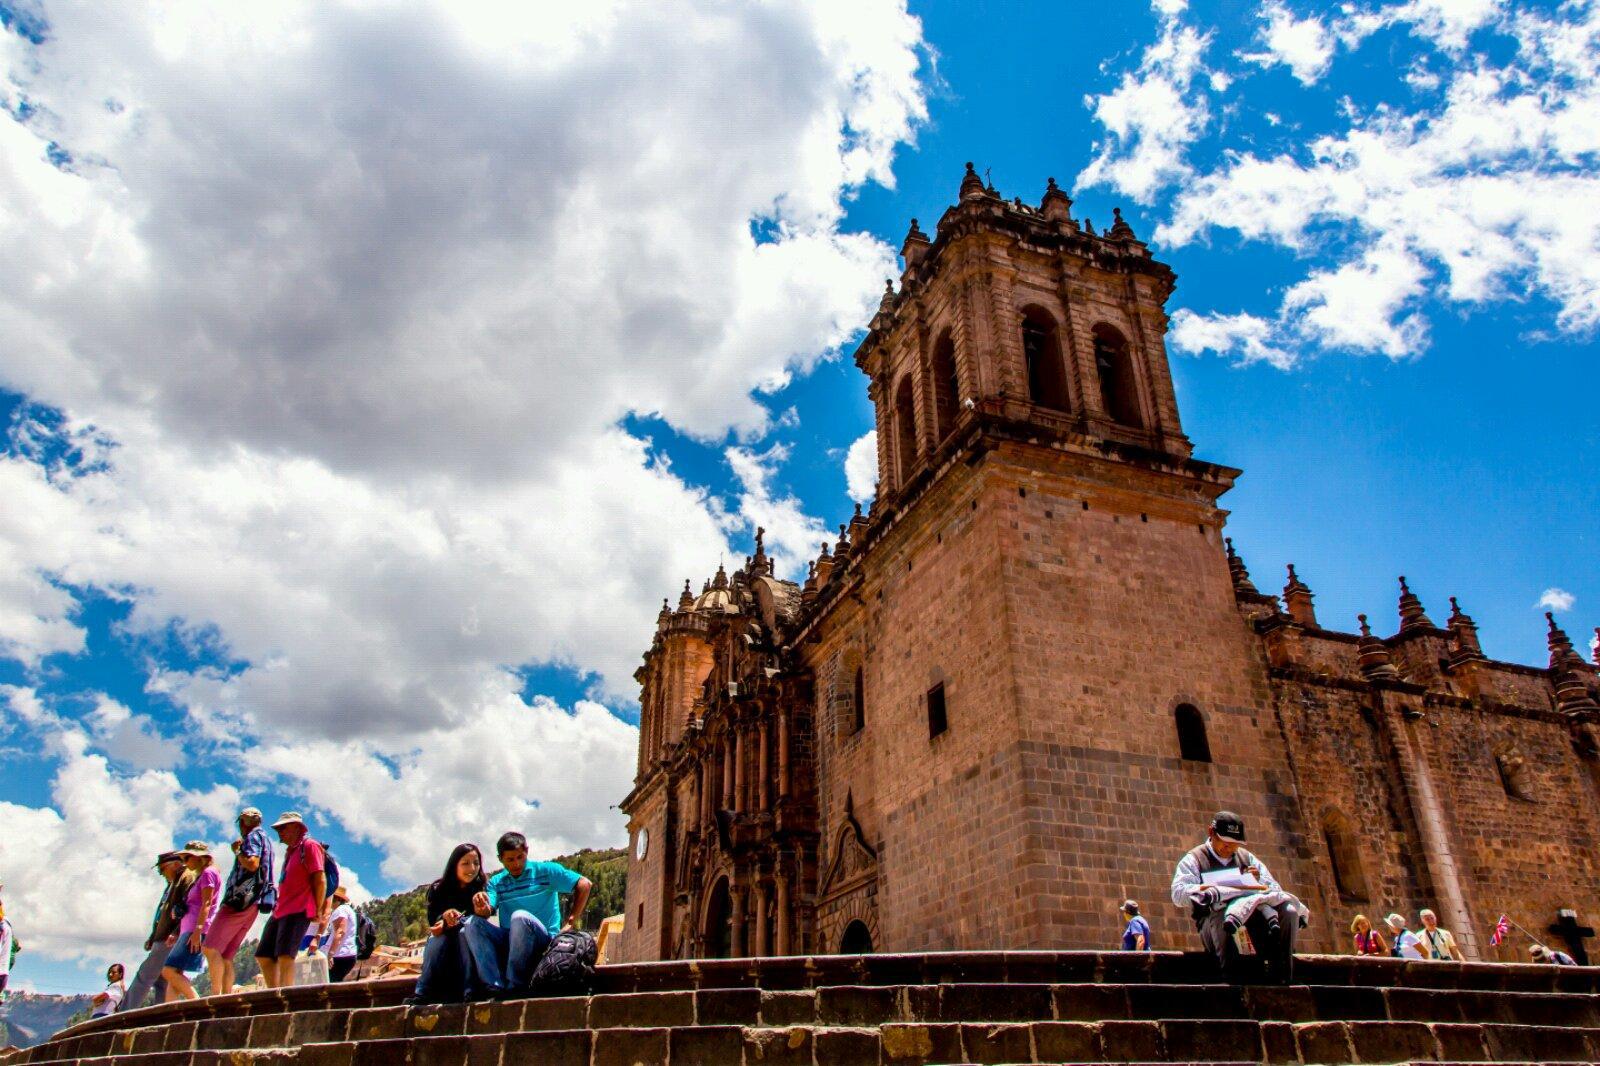 帝国斜阳-库斯科  作为秘鲁第四大城市-库斯科曾经是印加帝国的首都